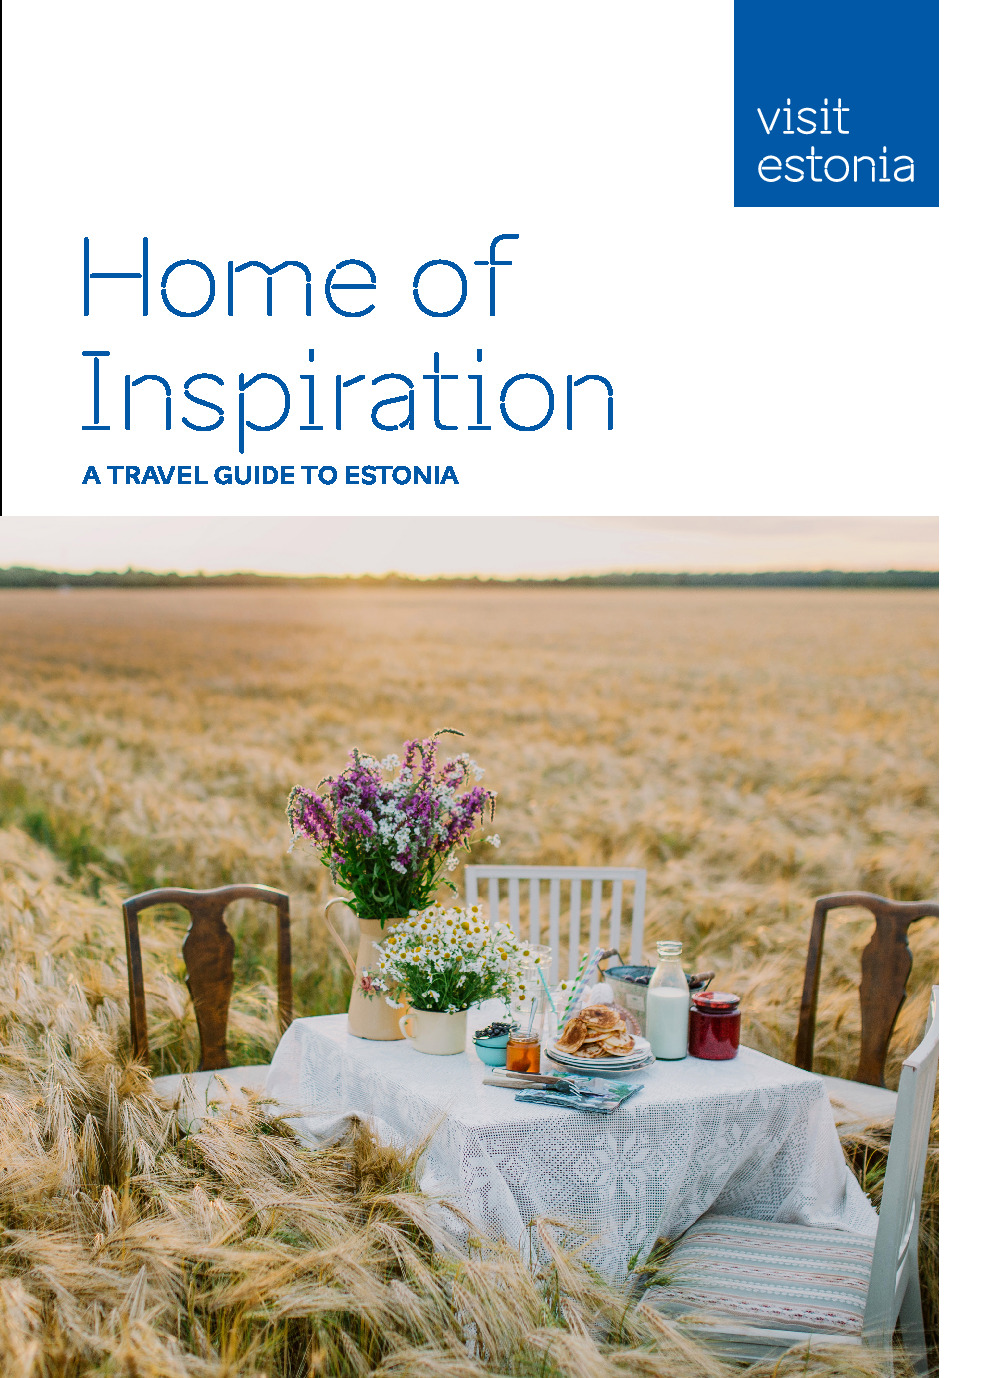 Home of inspiration - A travel guide to Estonia.pdf